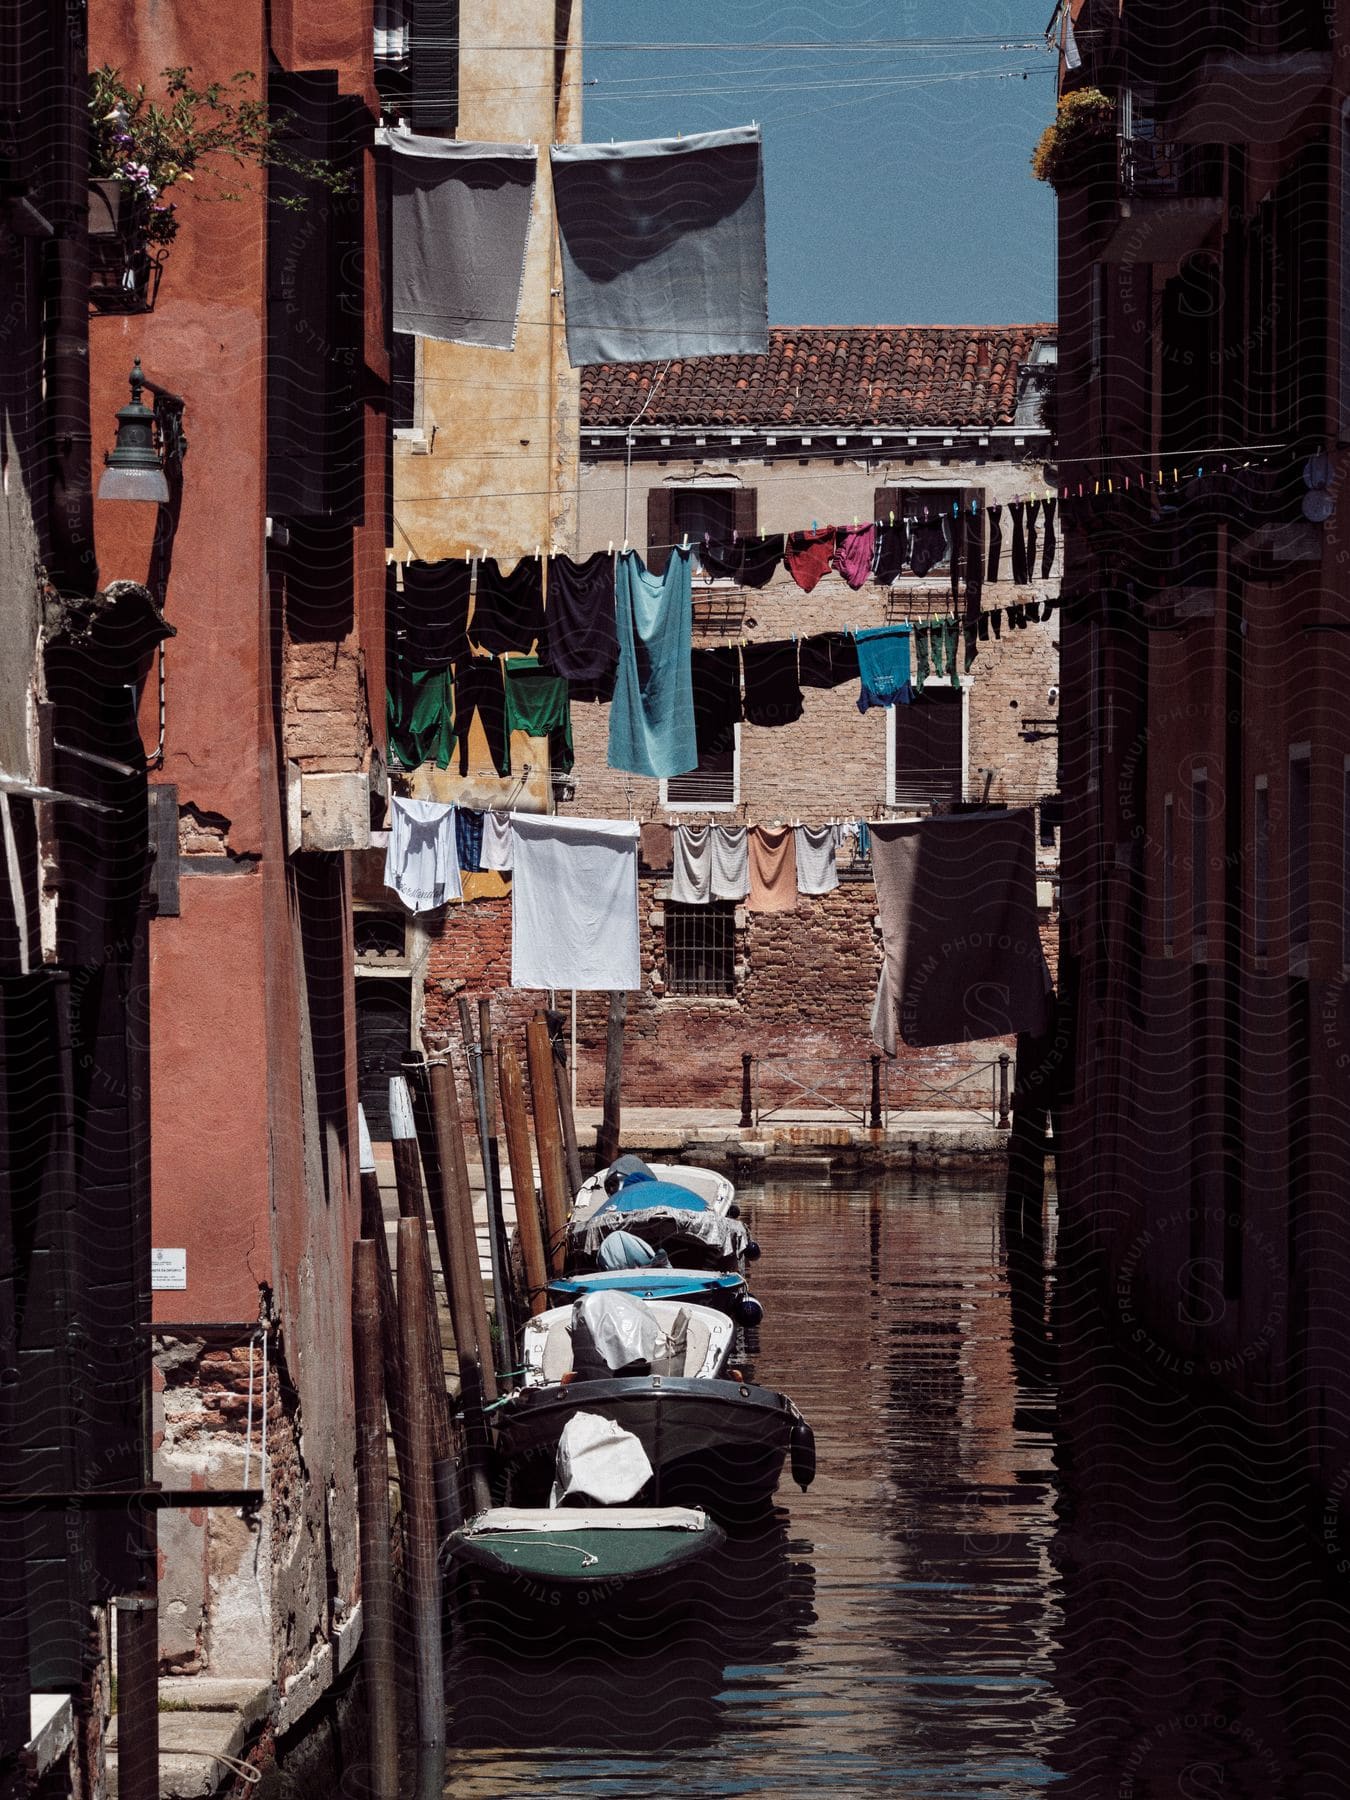 A narrow alleyway in Venice, Italy